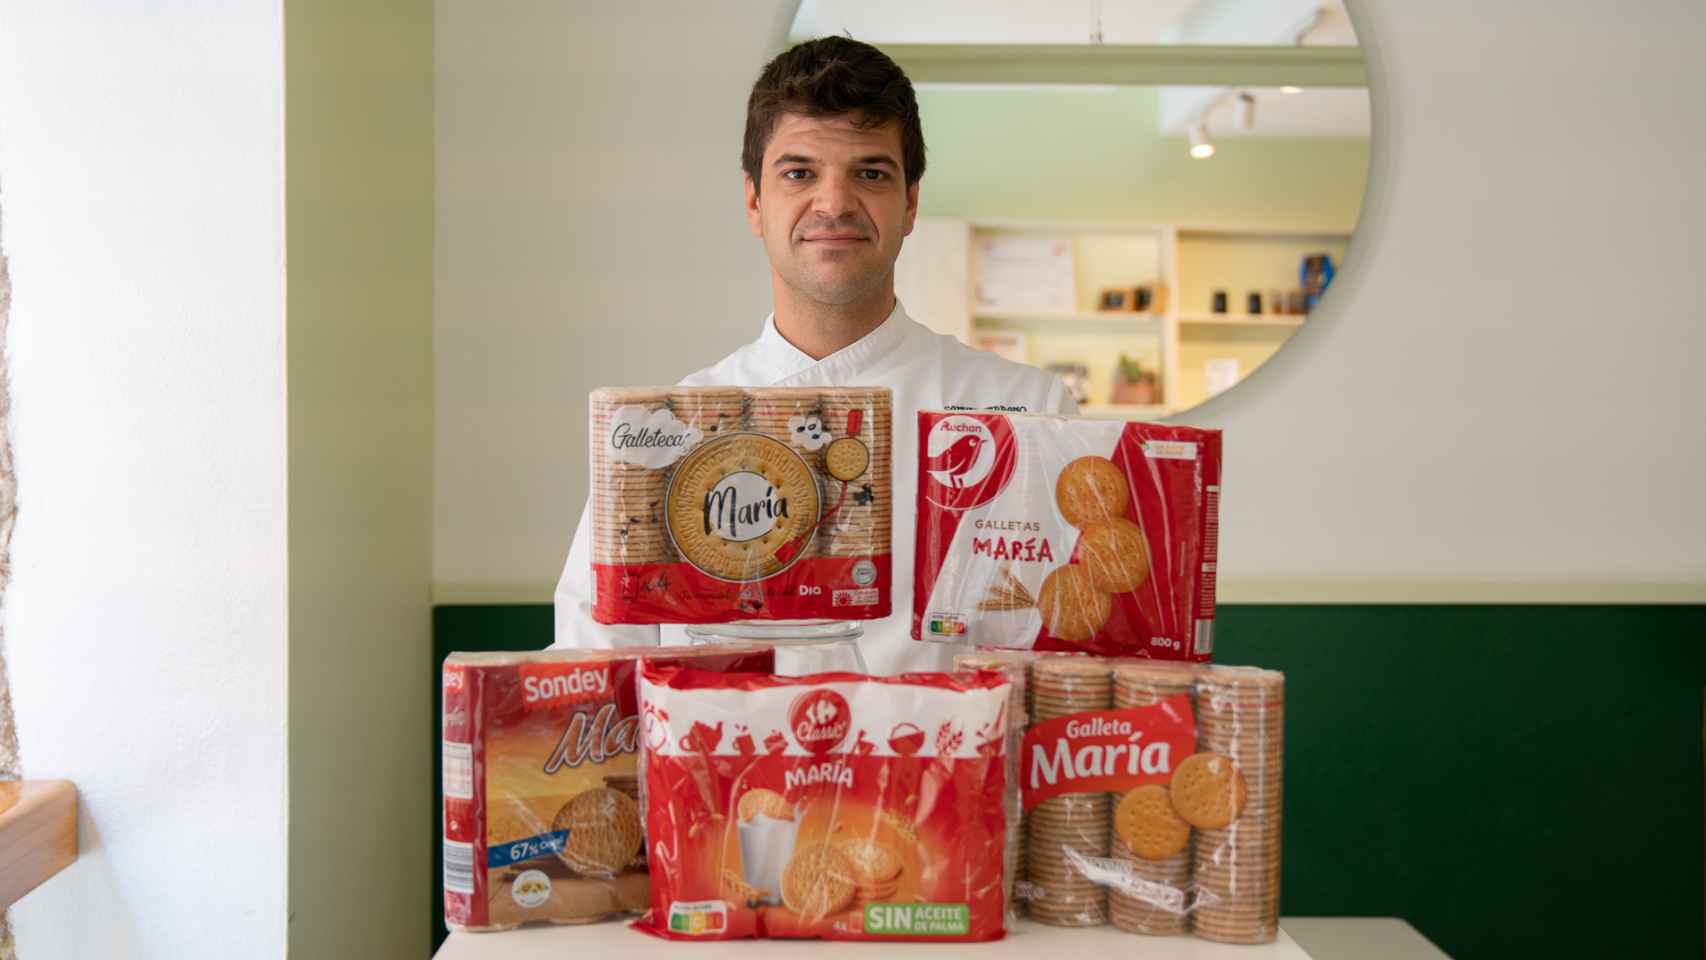 Los cinco paquetes de galletas María probados por Samuel Serrano, repostero profesional de La Barra Dulce.